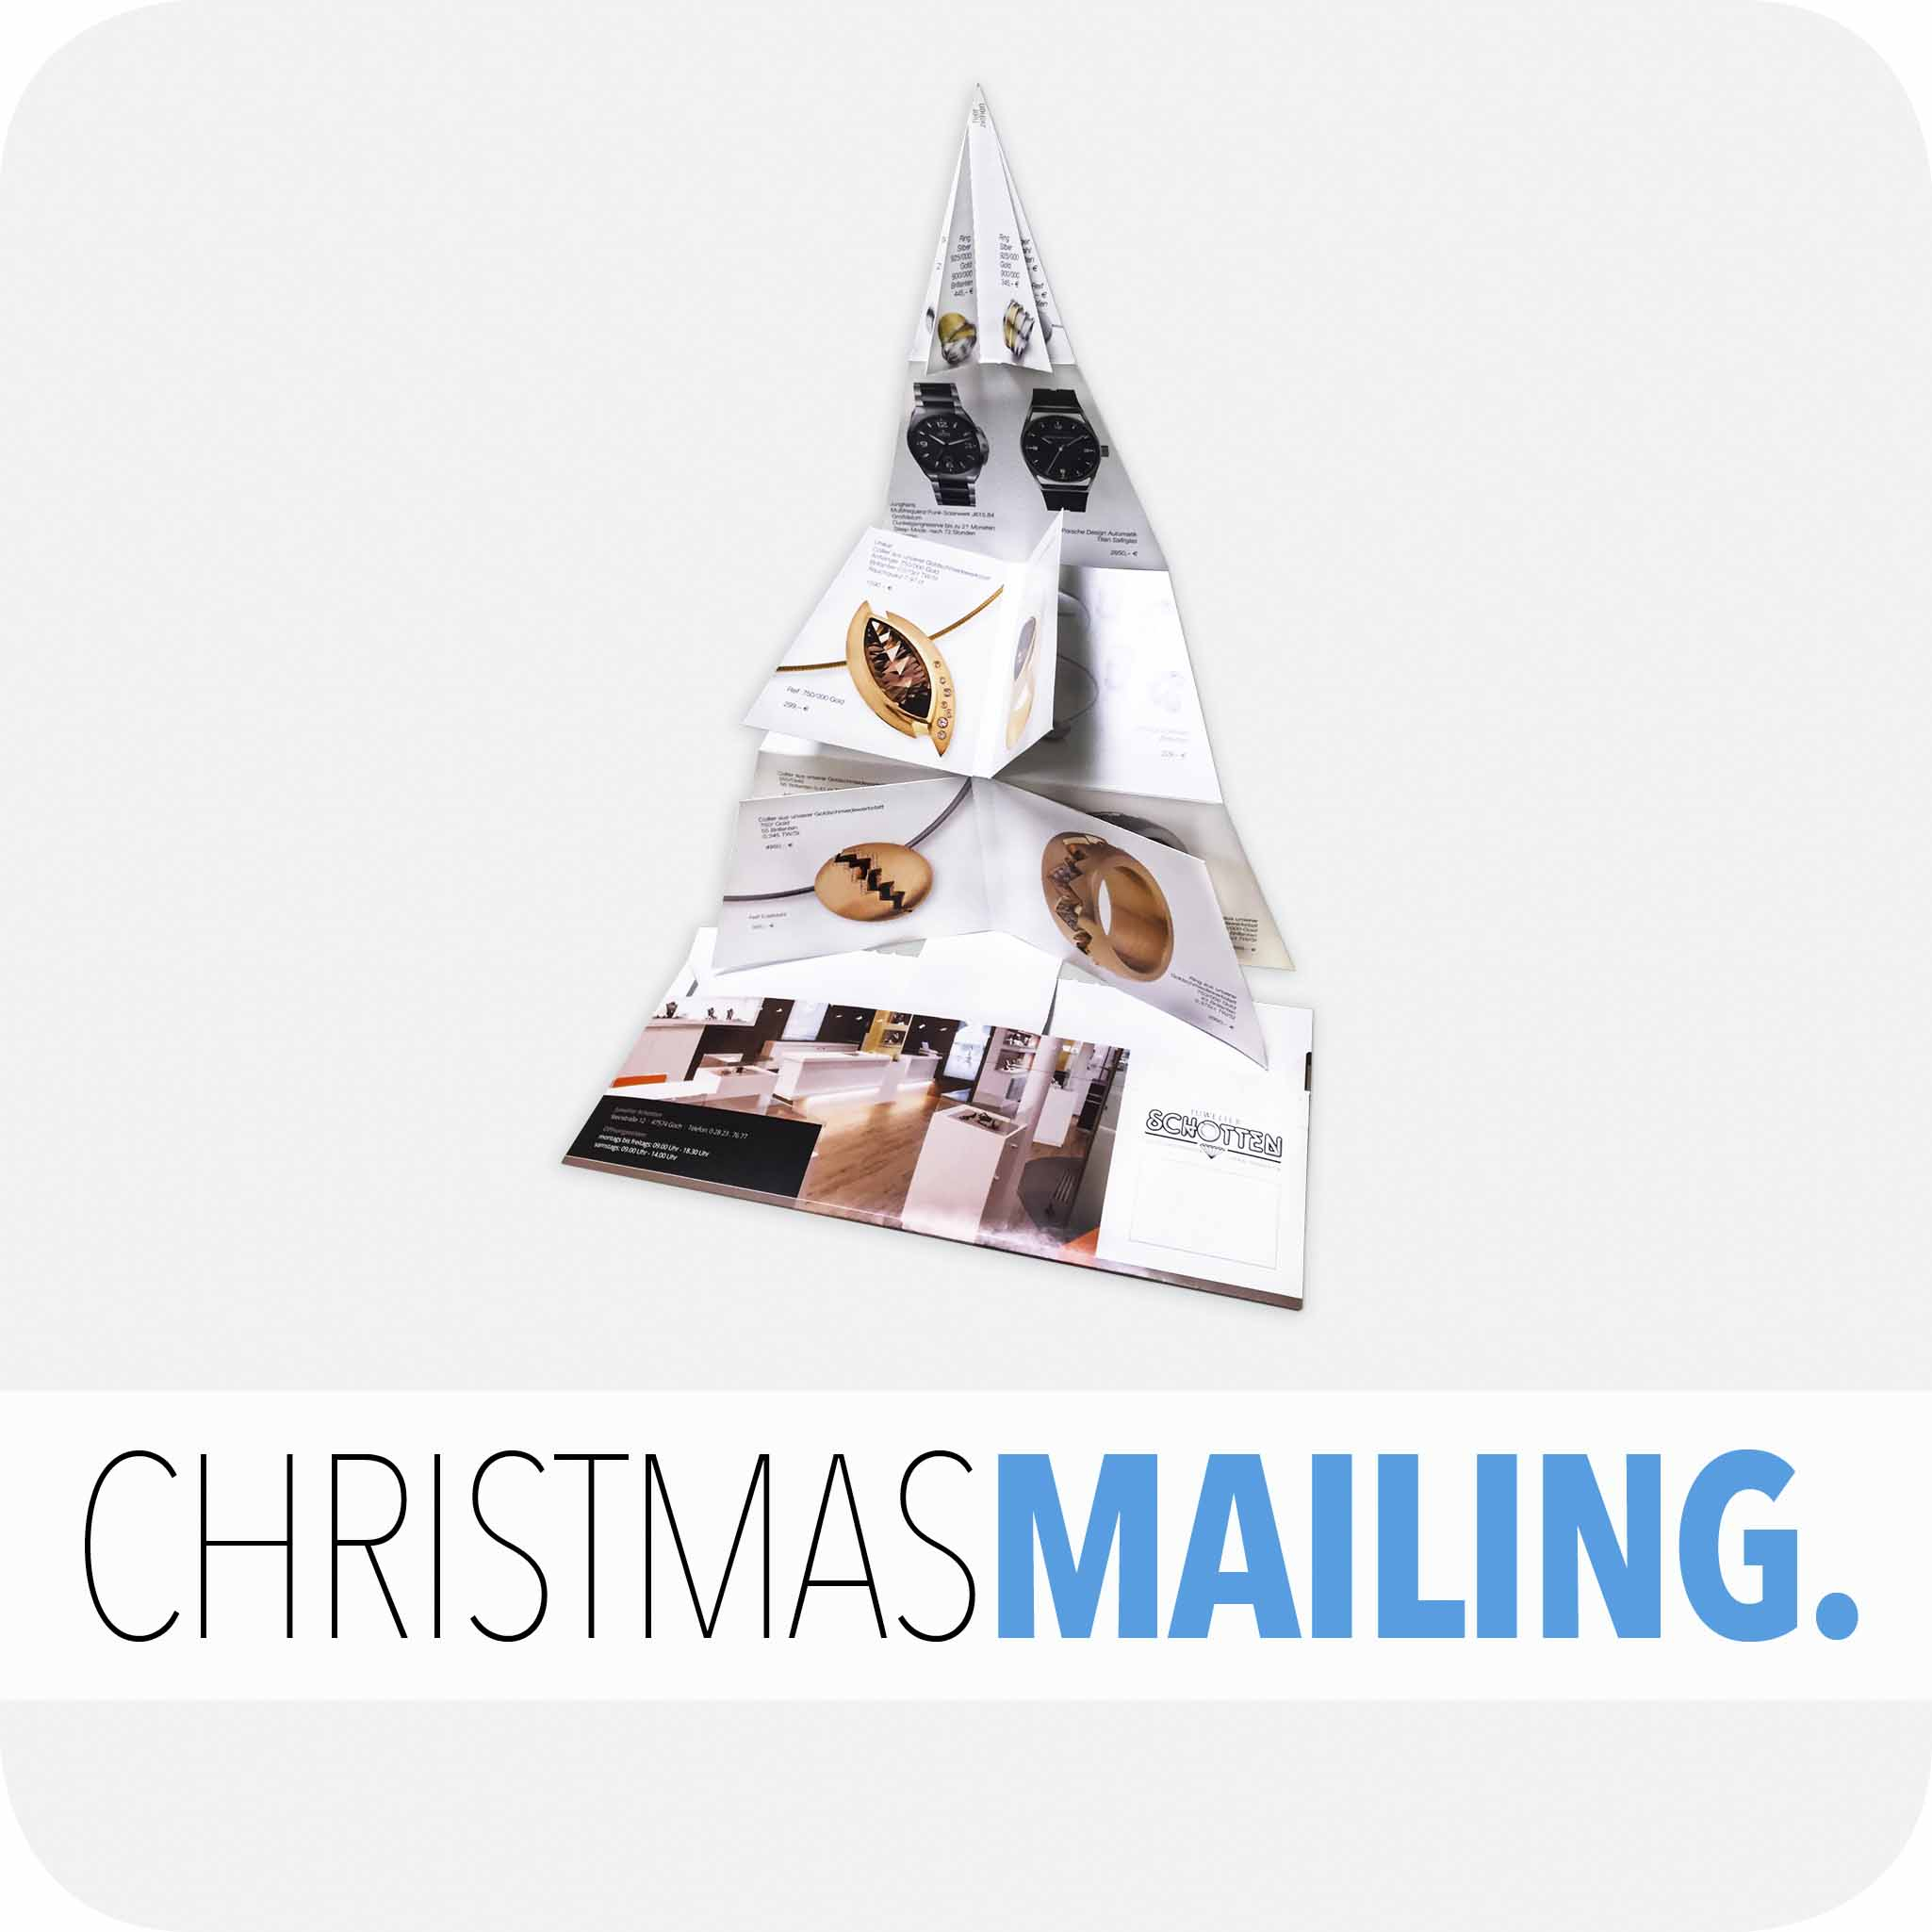 Christmas mailing